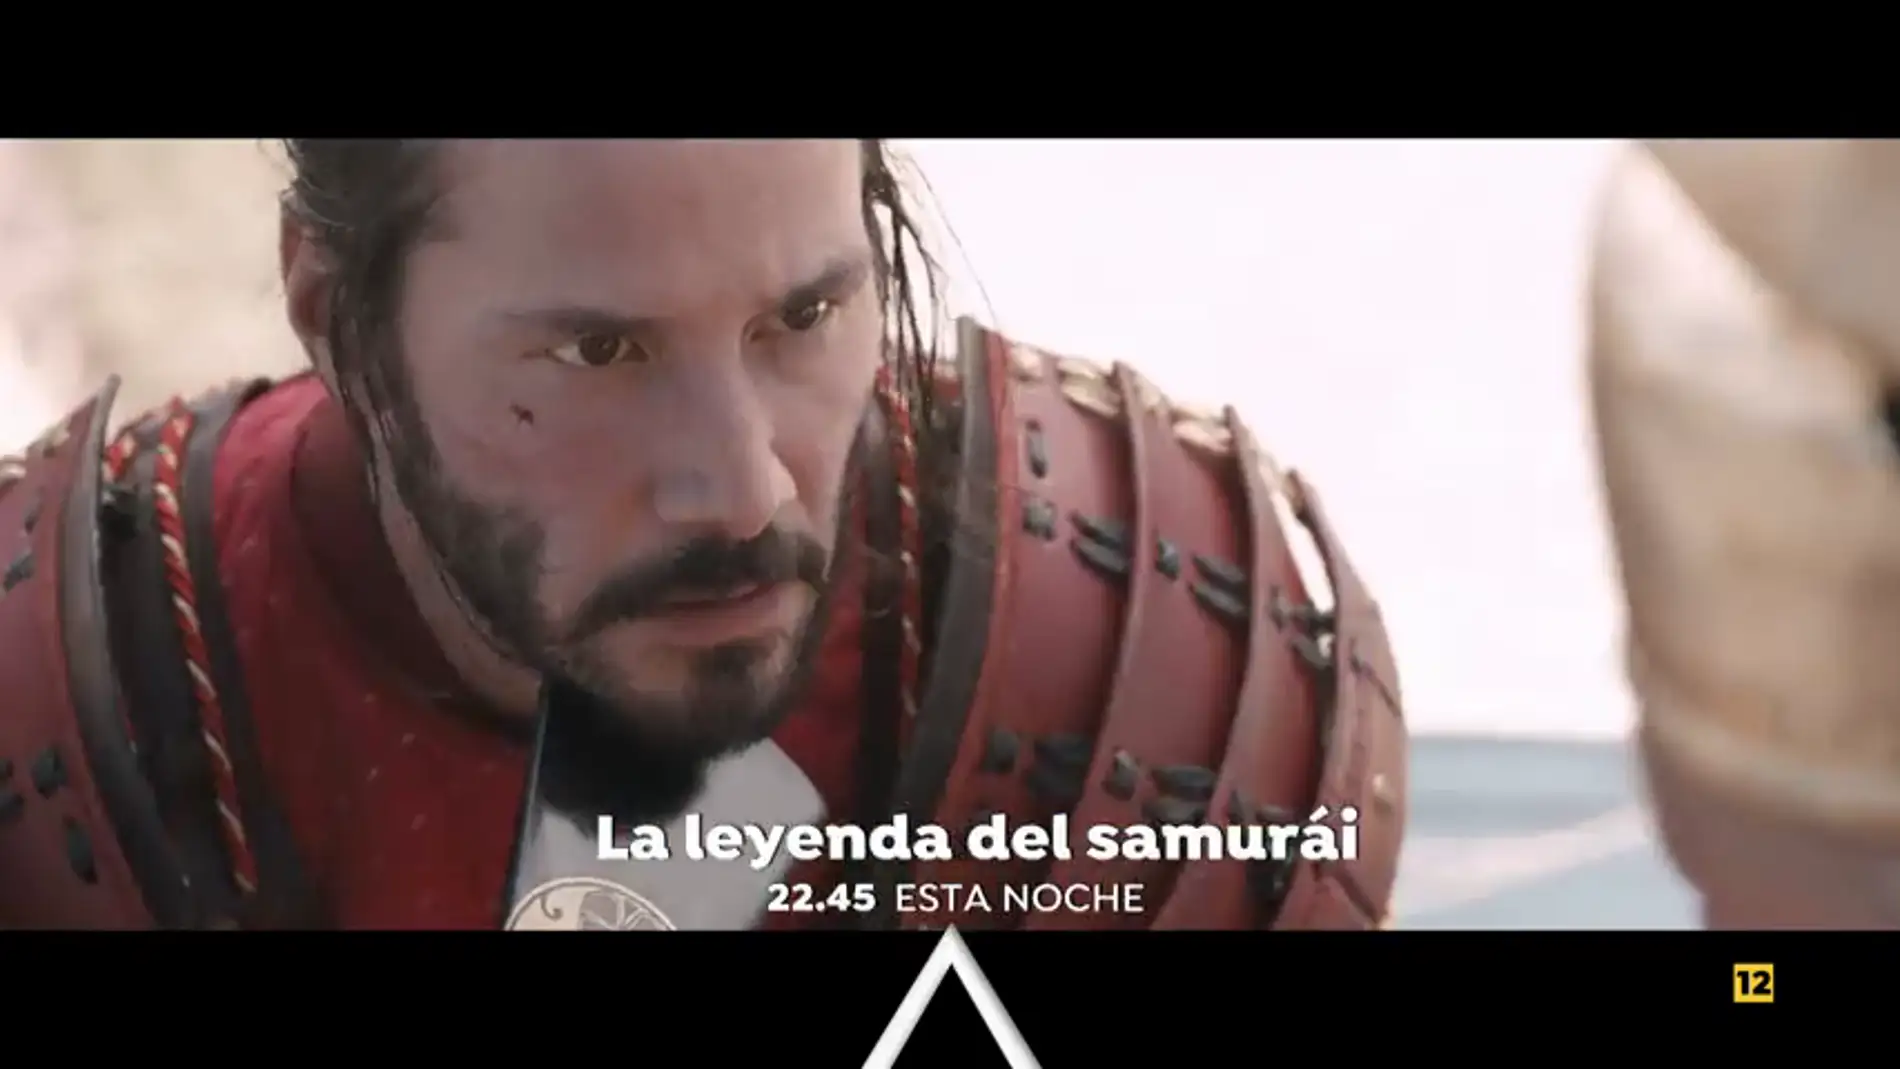 Antena 3 estrena 'La leyenda del Samurai'